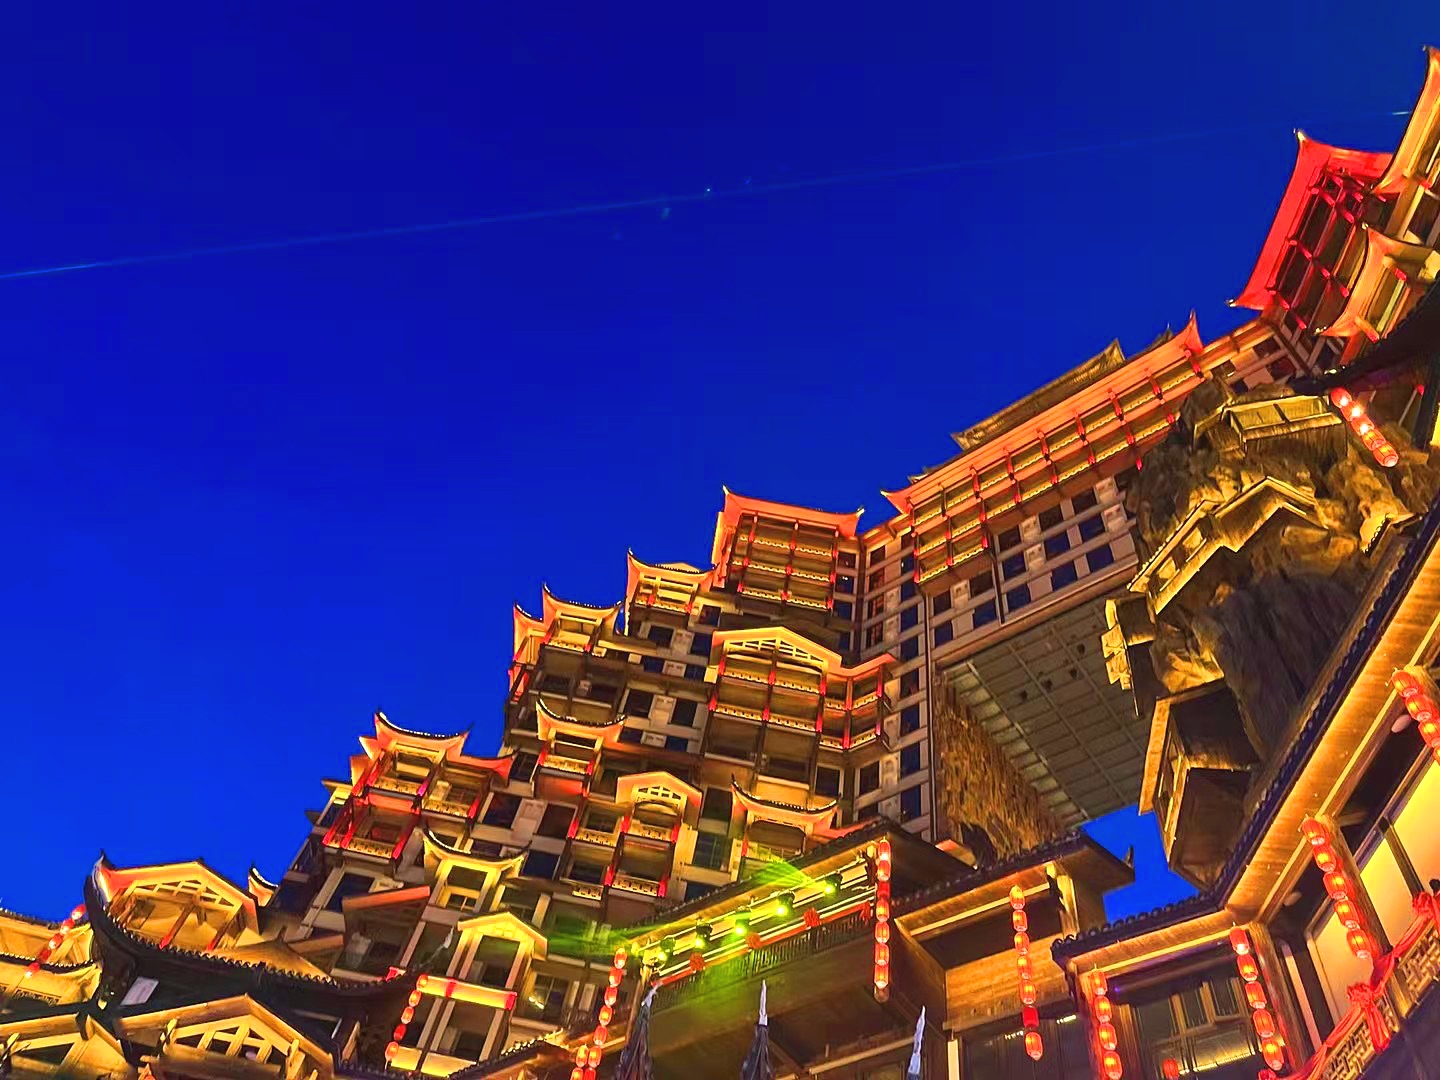 七十二奇楼位于湖南省张家界武陵源景区内,是一座被誉为天下第一奇楼